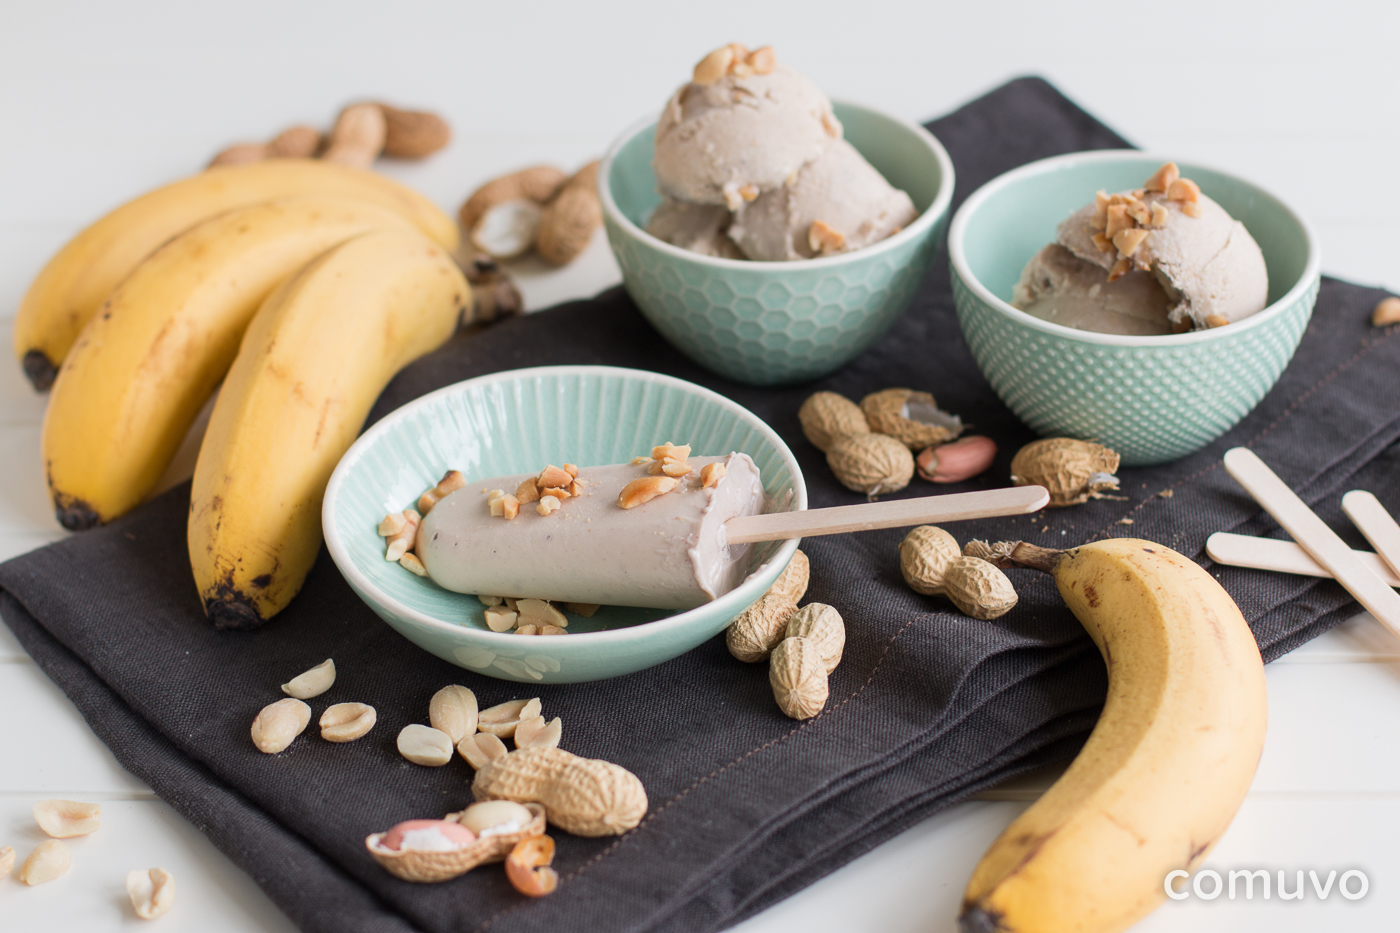 Selbstgemachtes Joghurteis ohne Zucker mit Erdnussmus und Banane | comuvo Blog